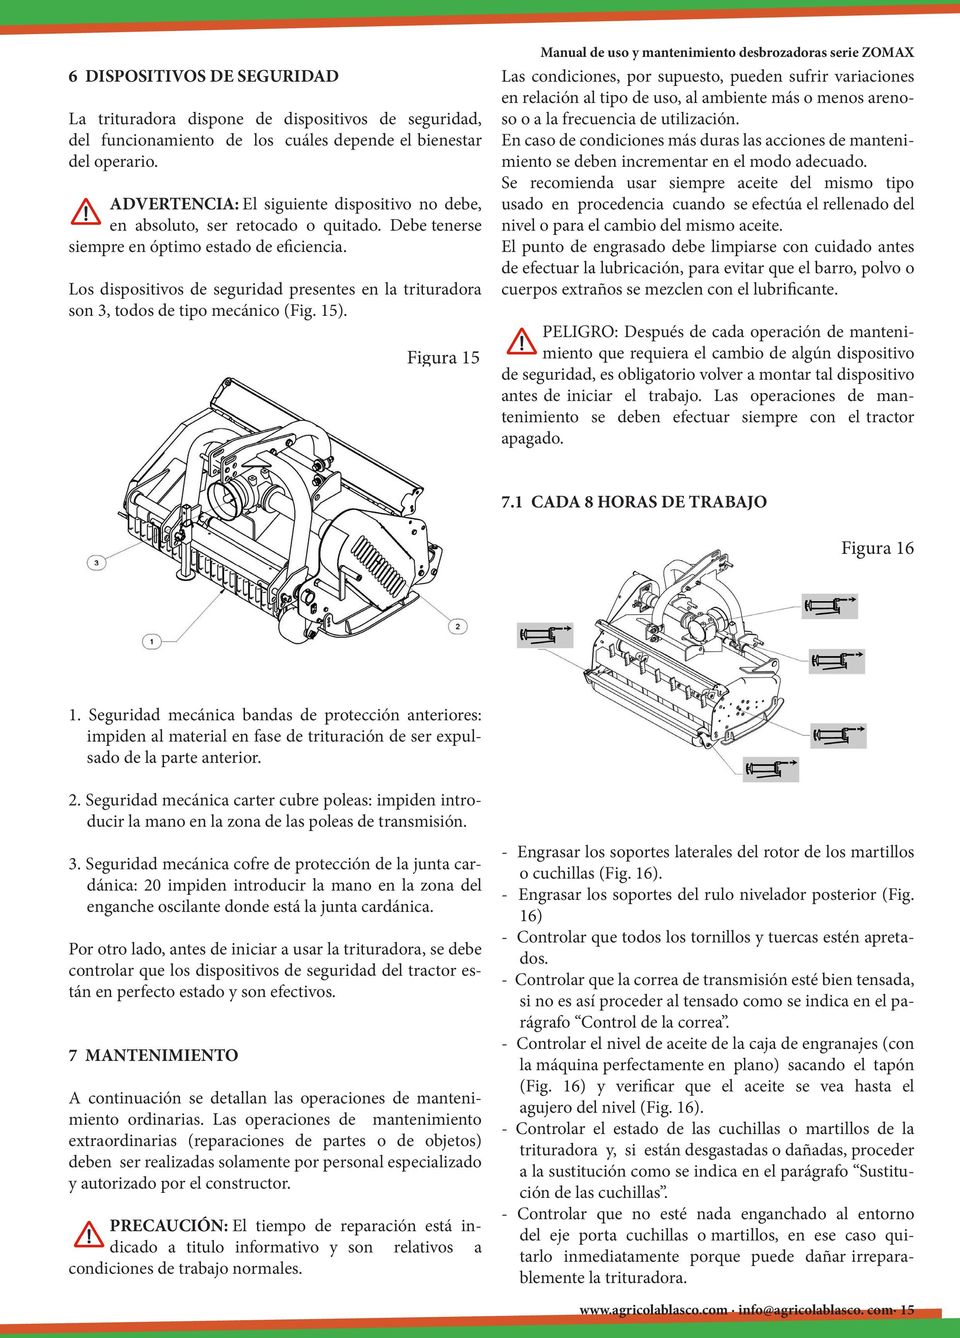 Los dispositivos de seguridad presentes en la trituradora son 3, todos de tipo mecánico (Fig. 15).